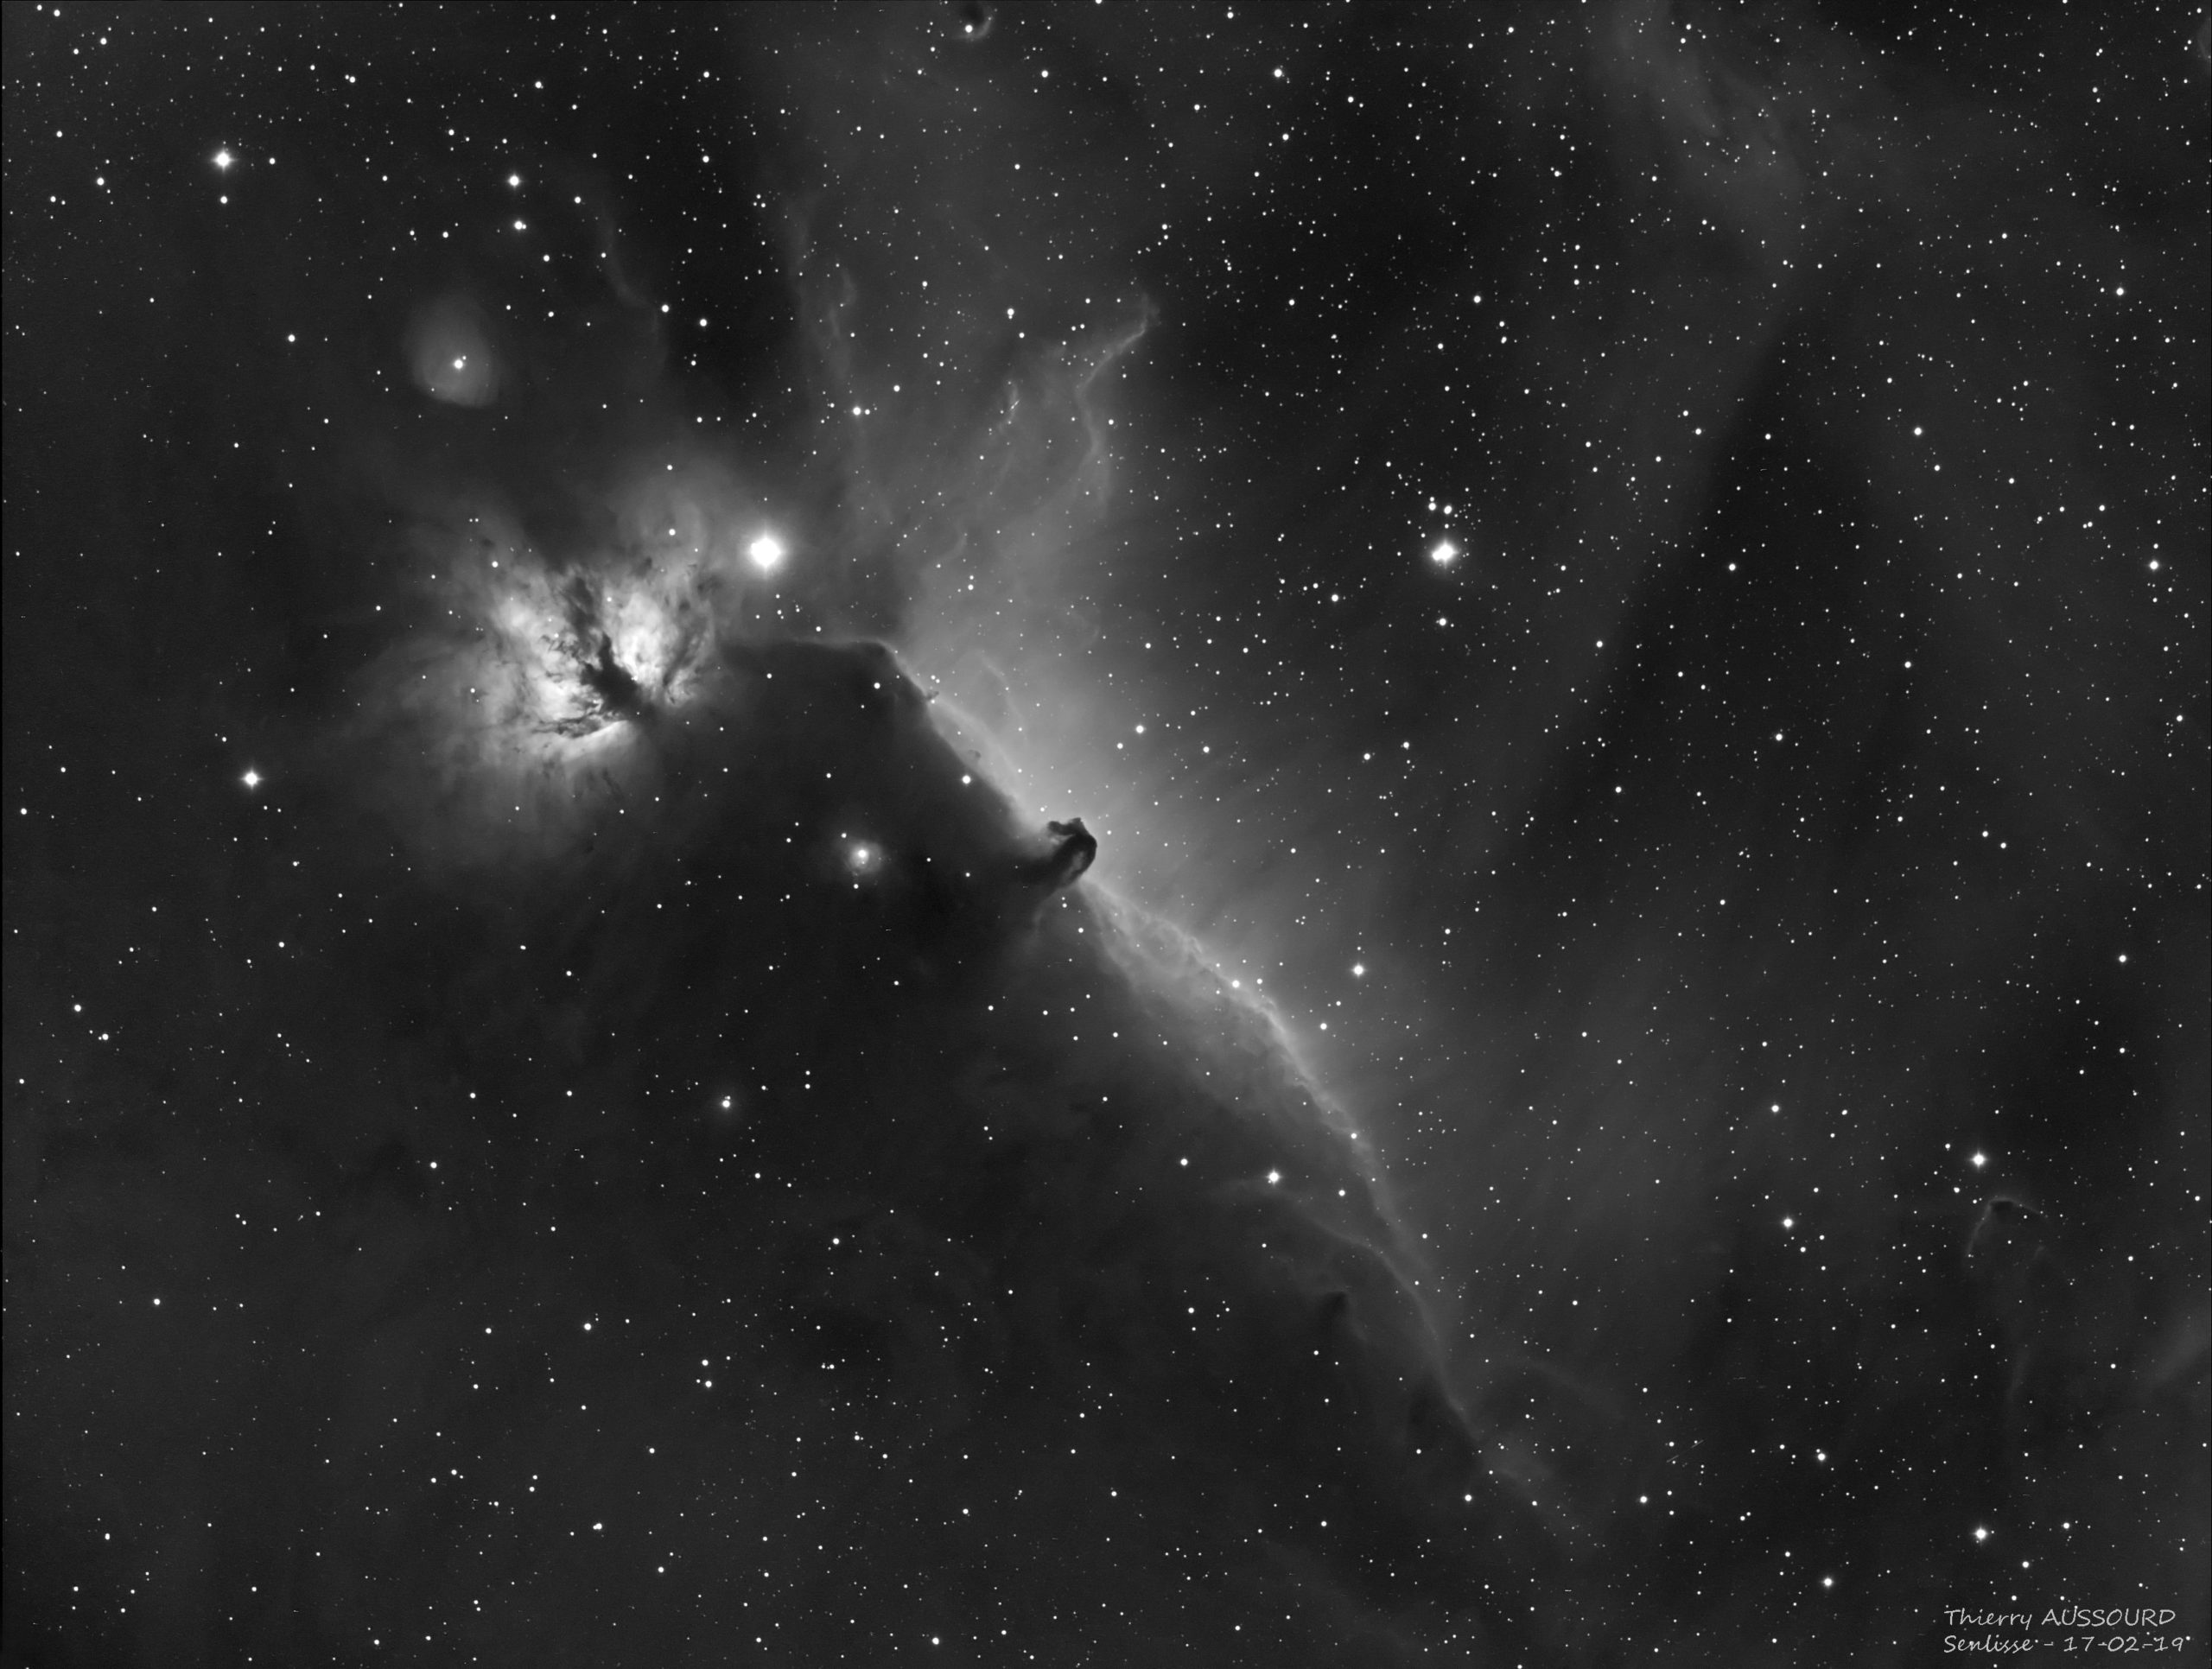 IC434 + NGC2024